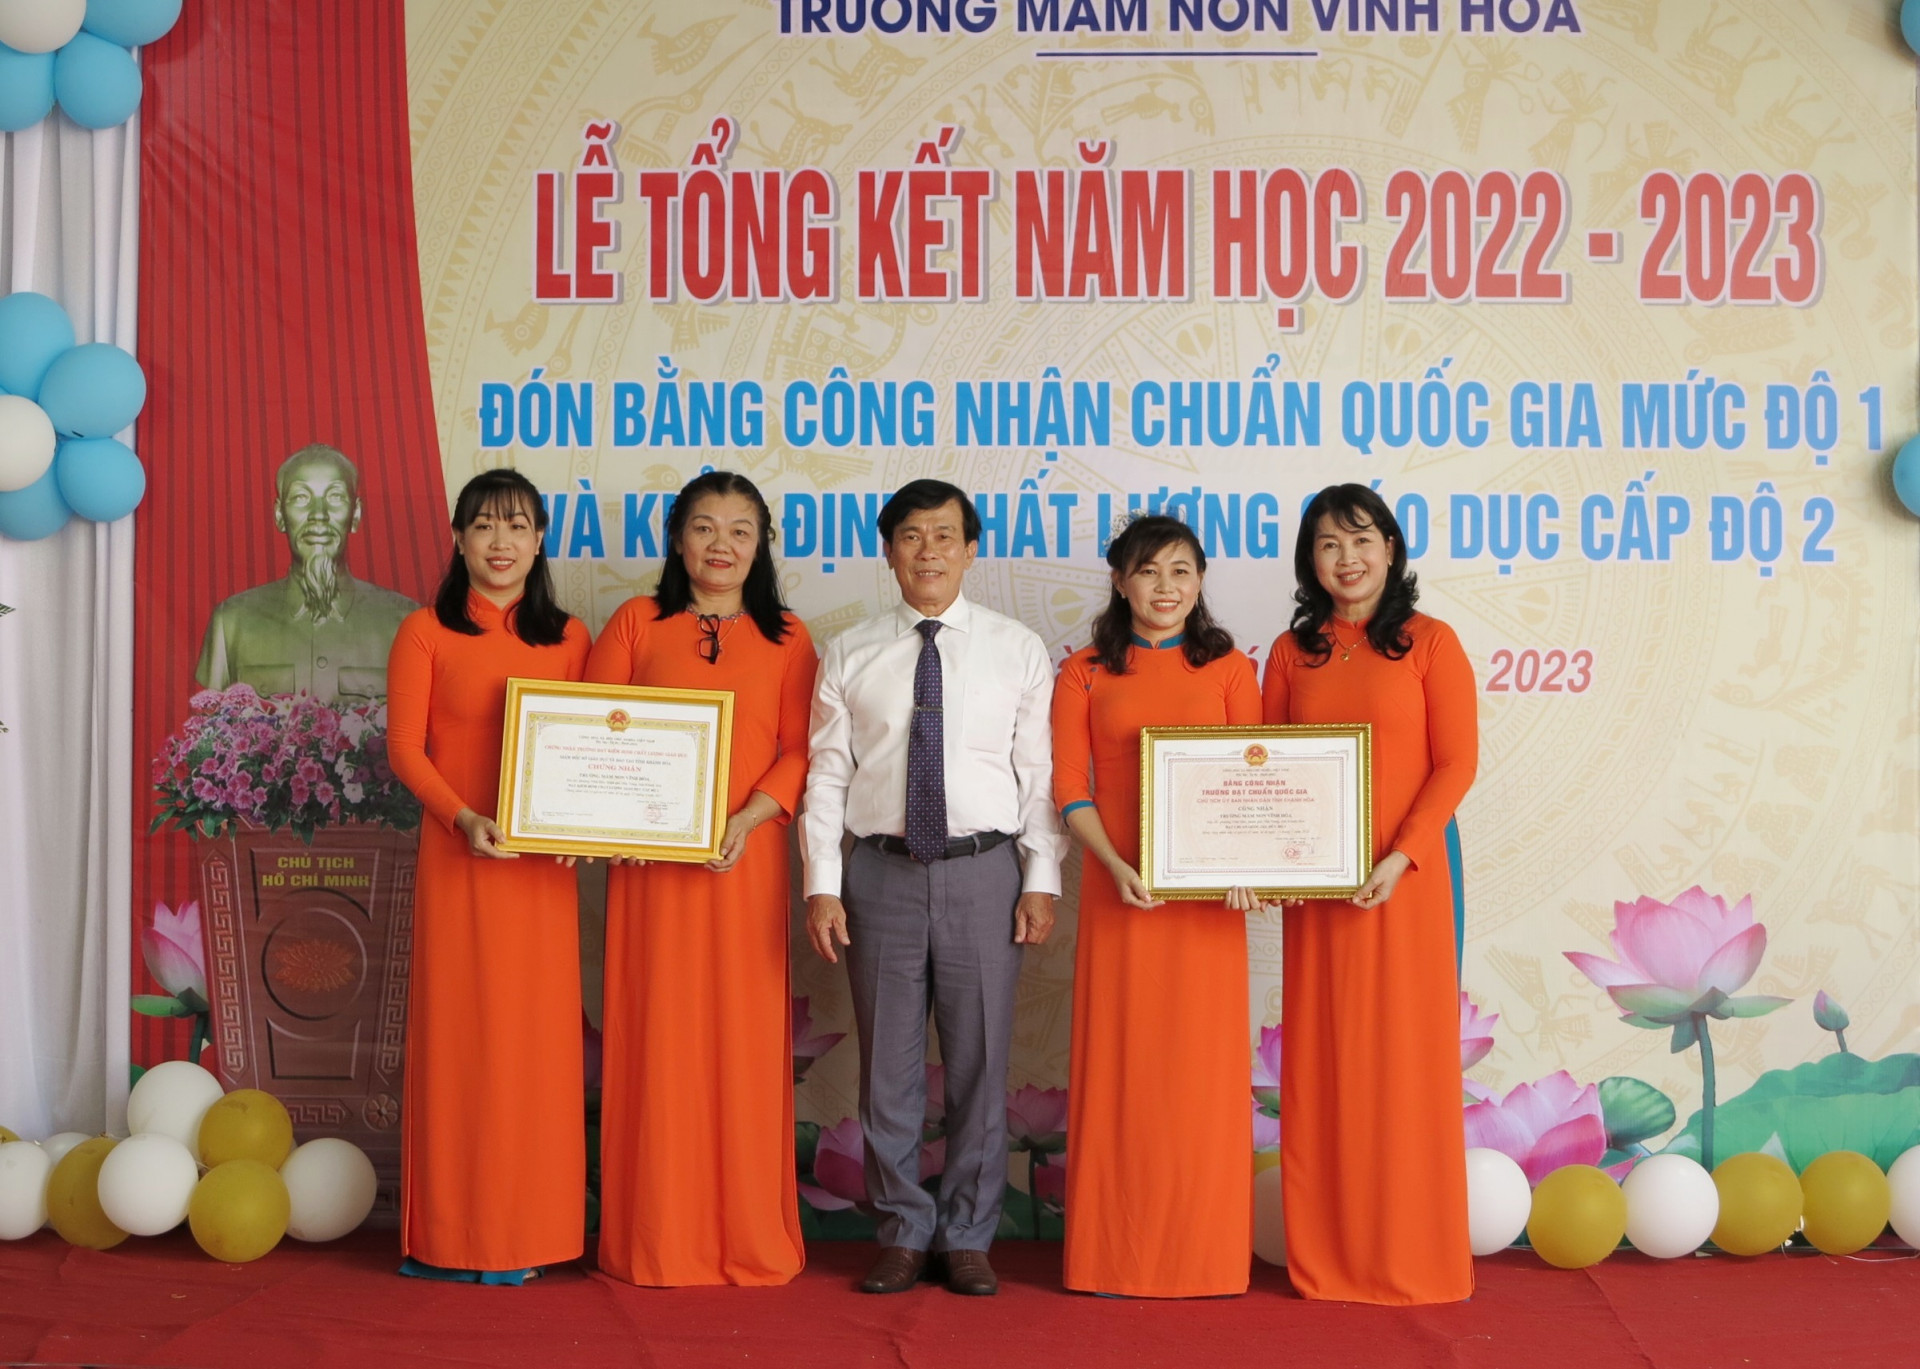 Ông Trần Nguyên Lập - Trưởng Phòng Giáo dục và Đào tạo TP. Nha Trang trao trao bằng công nhận đạt chuẩn quốc gia mức độ 1 của UBND tỉnh và chứng nhận đạt kiểm định chất lượng giáo dục cấp độ 2 của Sở Giáo dục và Đào tạo cho nhà trường.